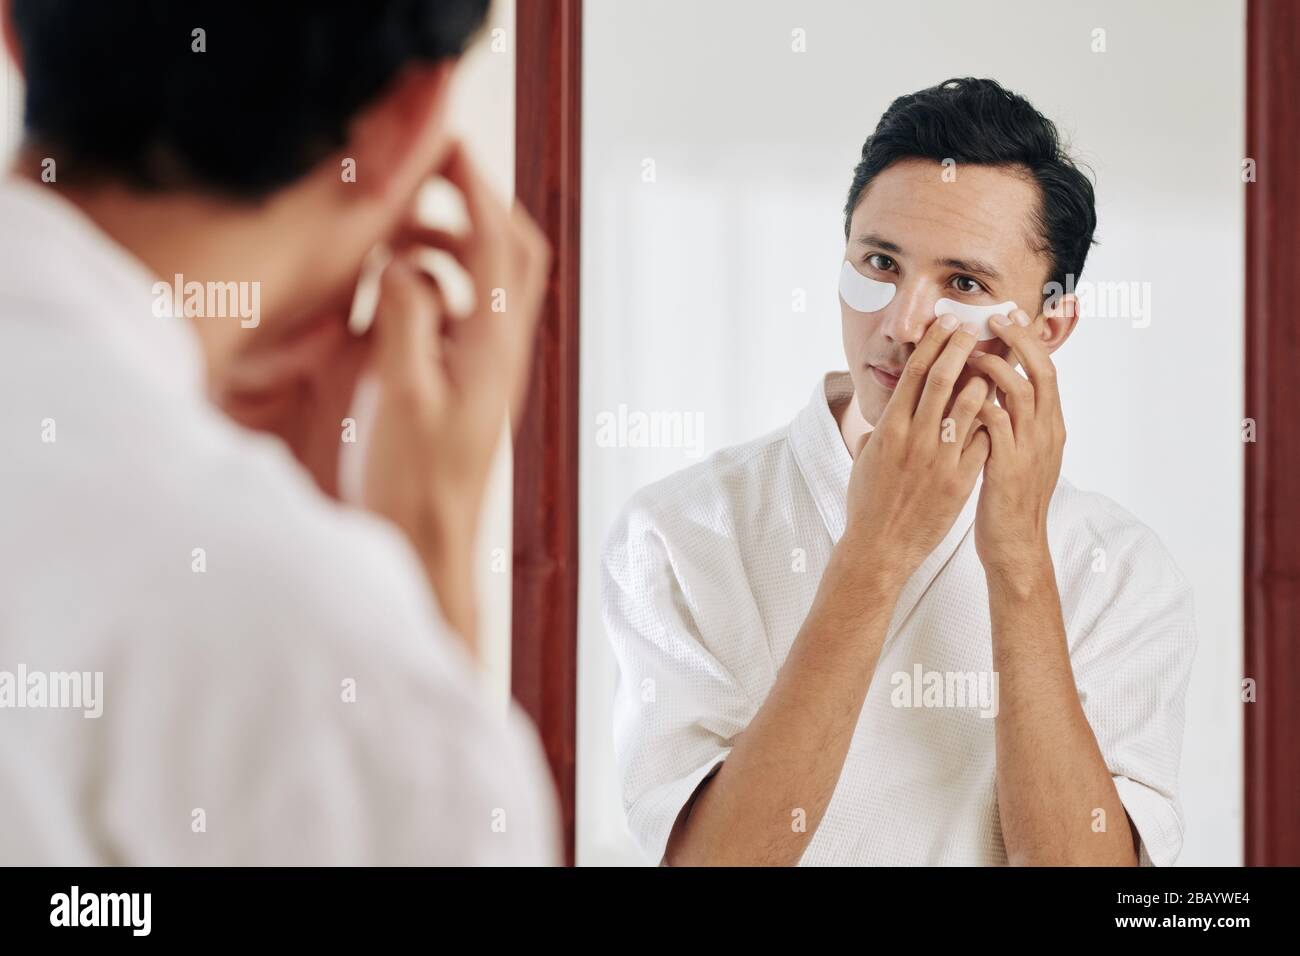 Gemischter junger Mann, der nach der morgendlichen Dusche vor dem Spiegel steht und Unteraugenflecken aufspielt Stockfoto